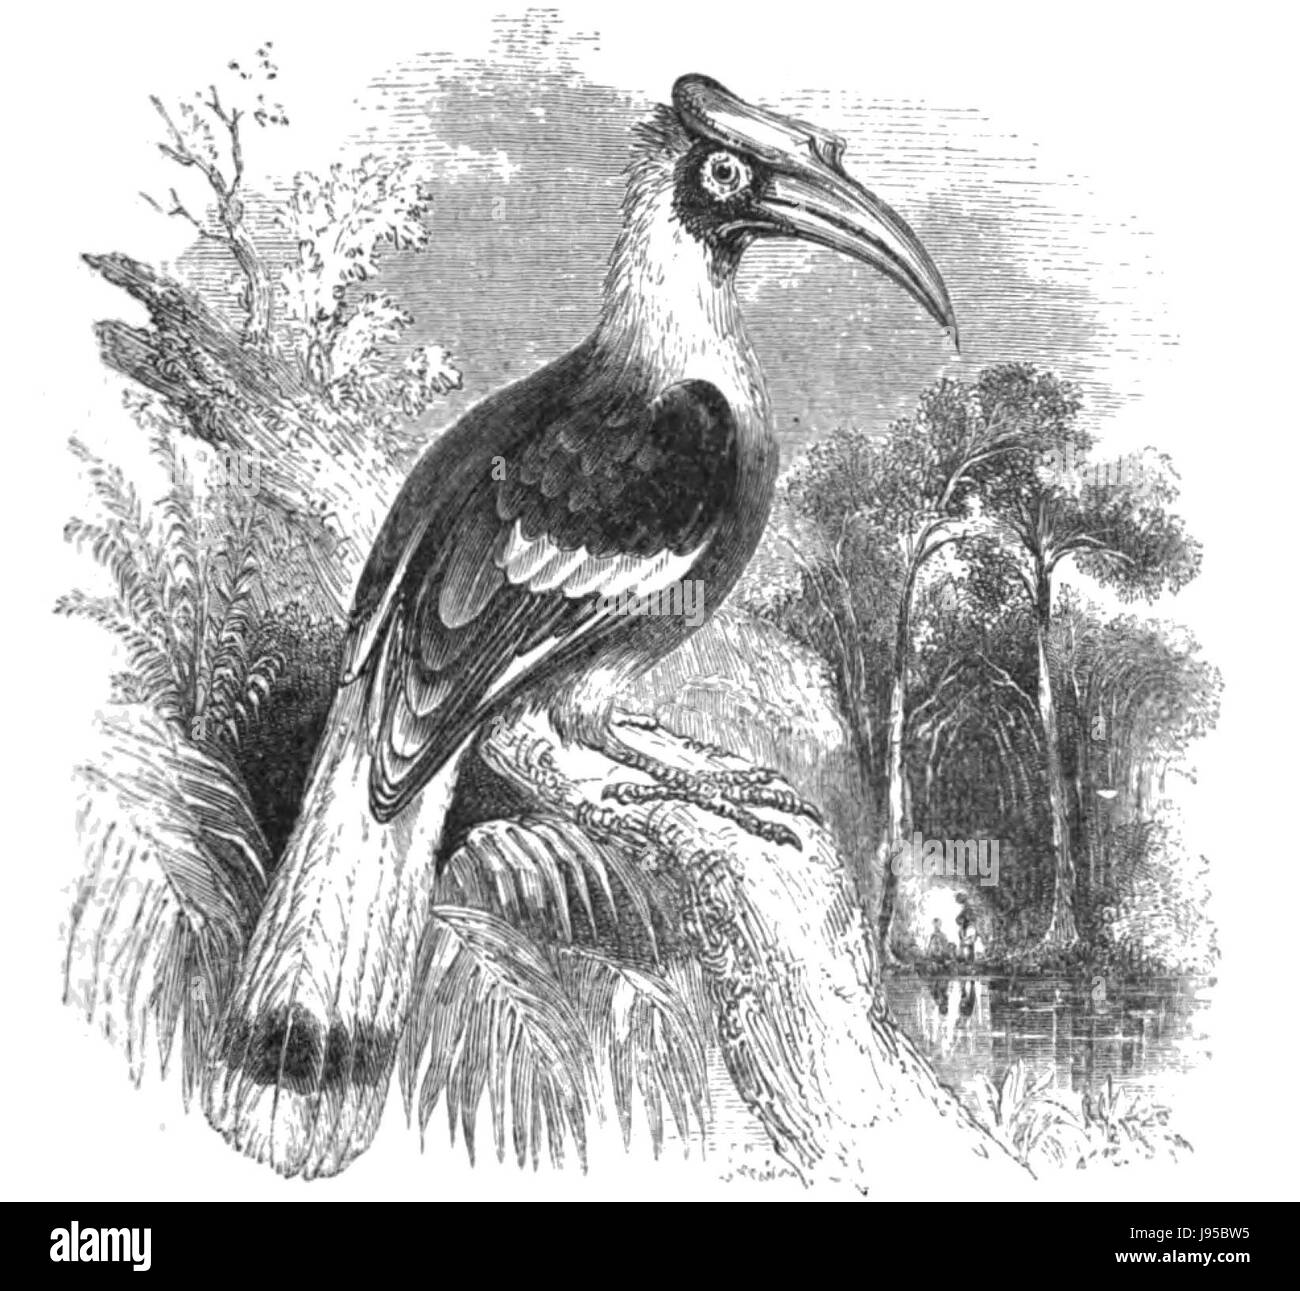 Natural History, Birds   Hornbill Stock Photo